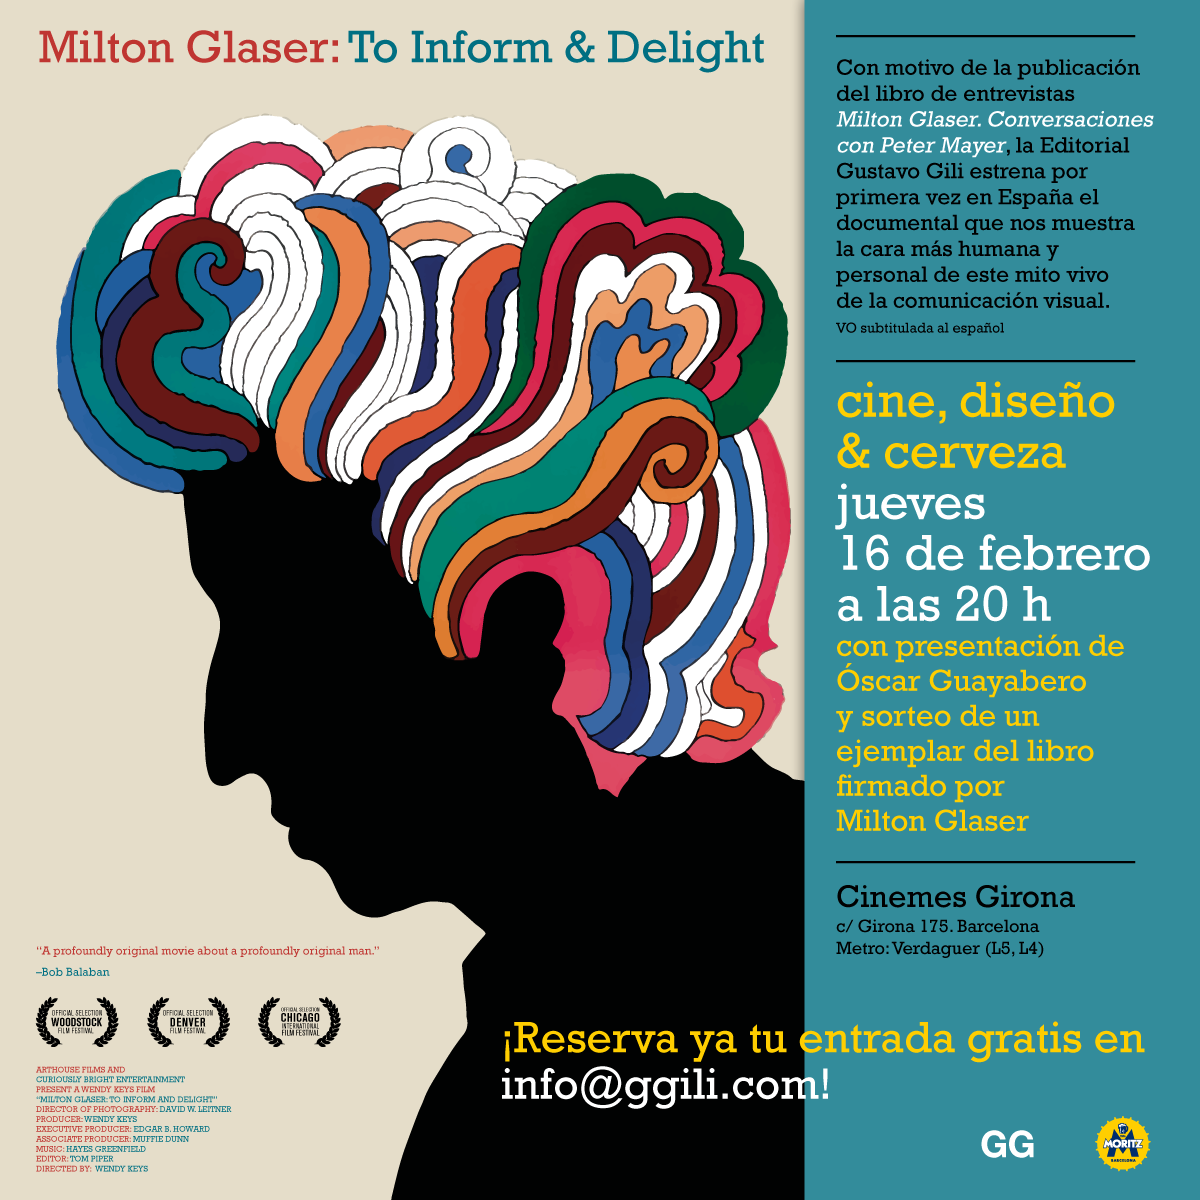 ¡Te invitamos a una noche de cine, diseño y cerveza con Milton Glaser!